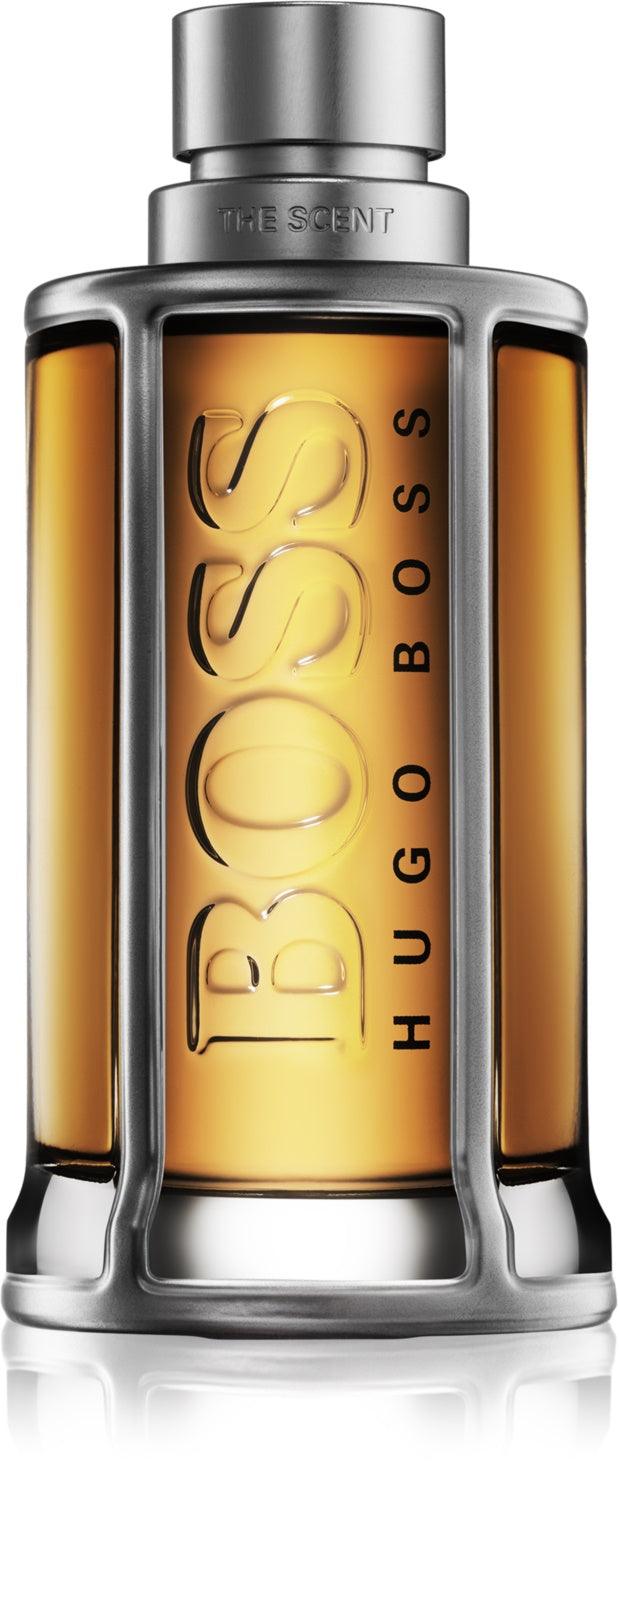 Hugo Boss BOSS The Scent Eau de Toilette for Men - Tester - Perfume Oasis